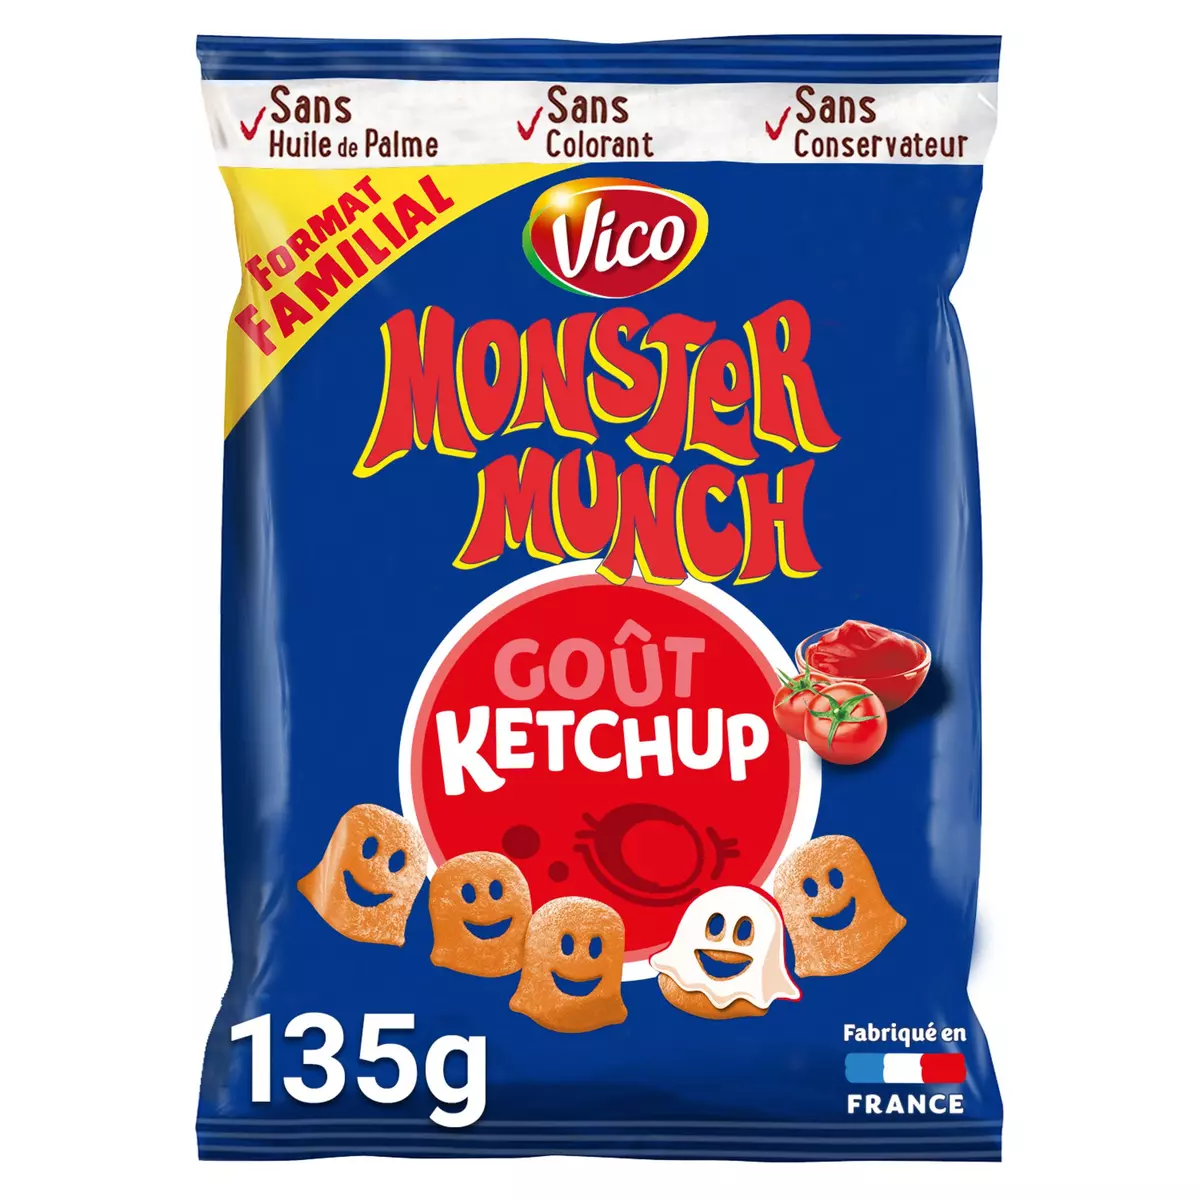 MONSTER MUNCH Biscuits soufflés goût ketchup format familial 135g